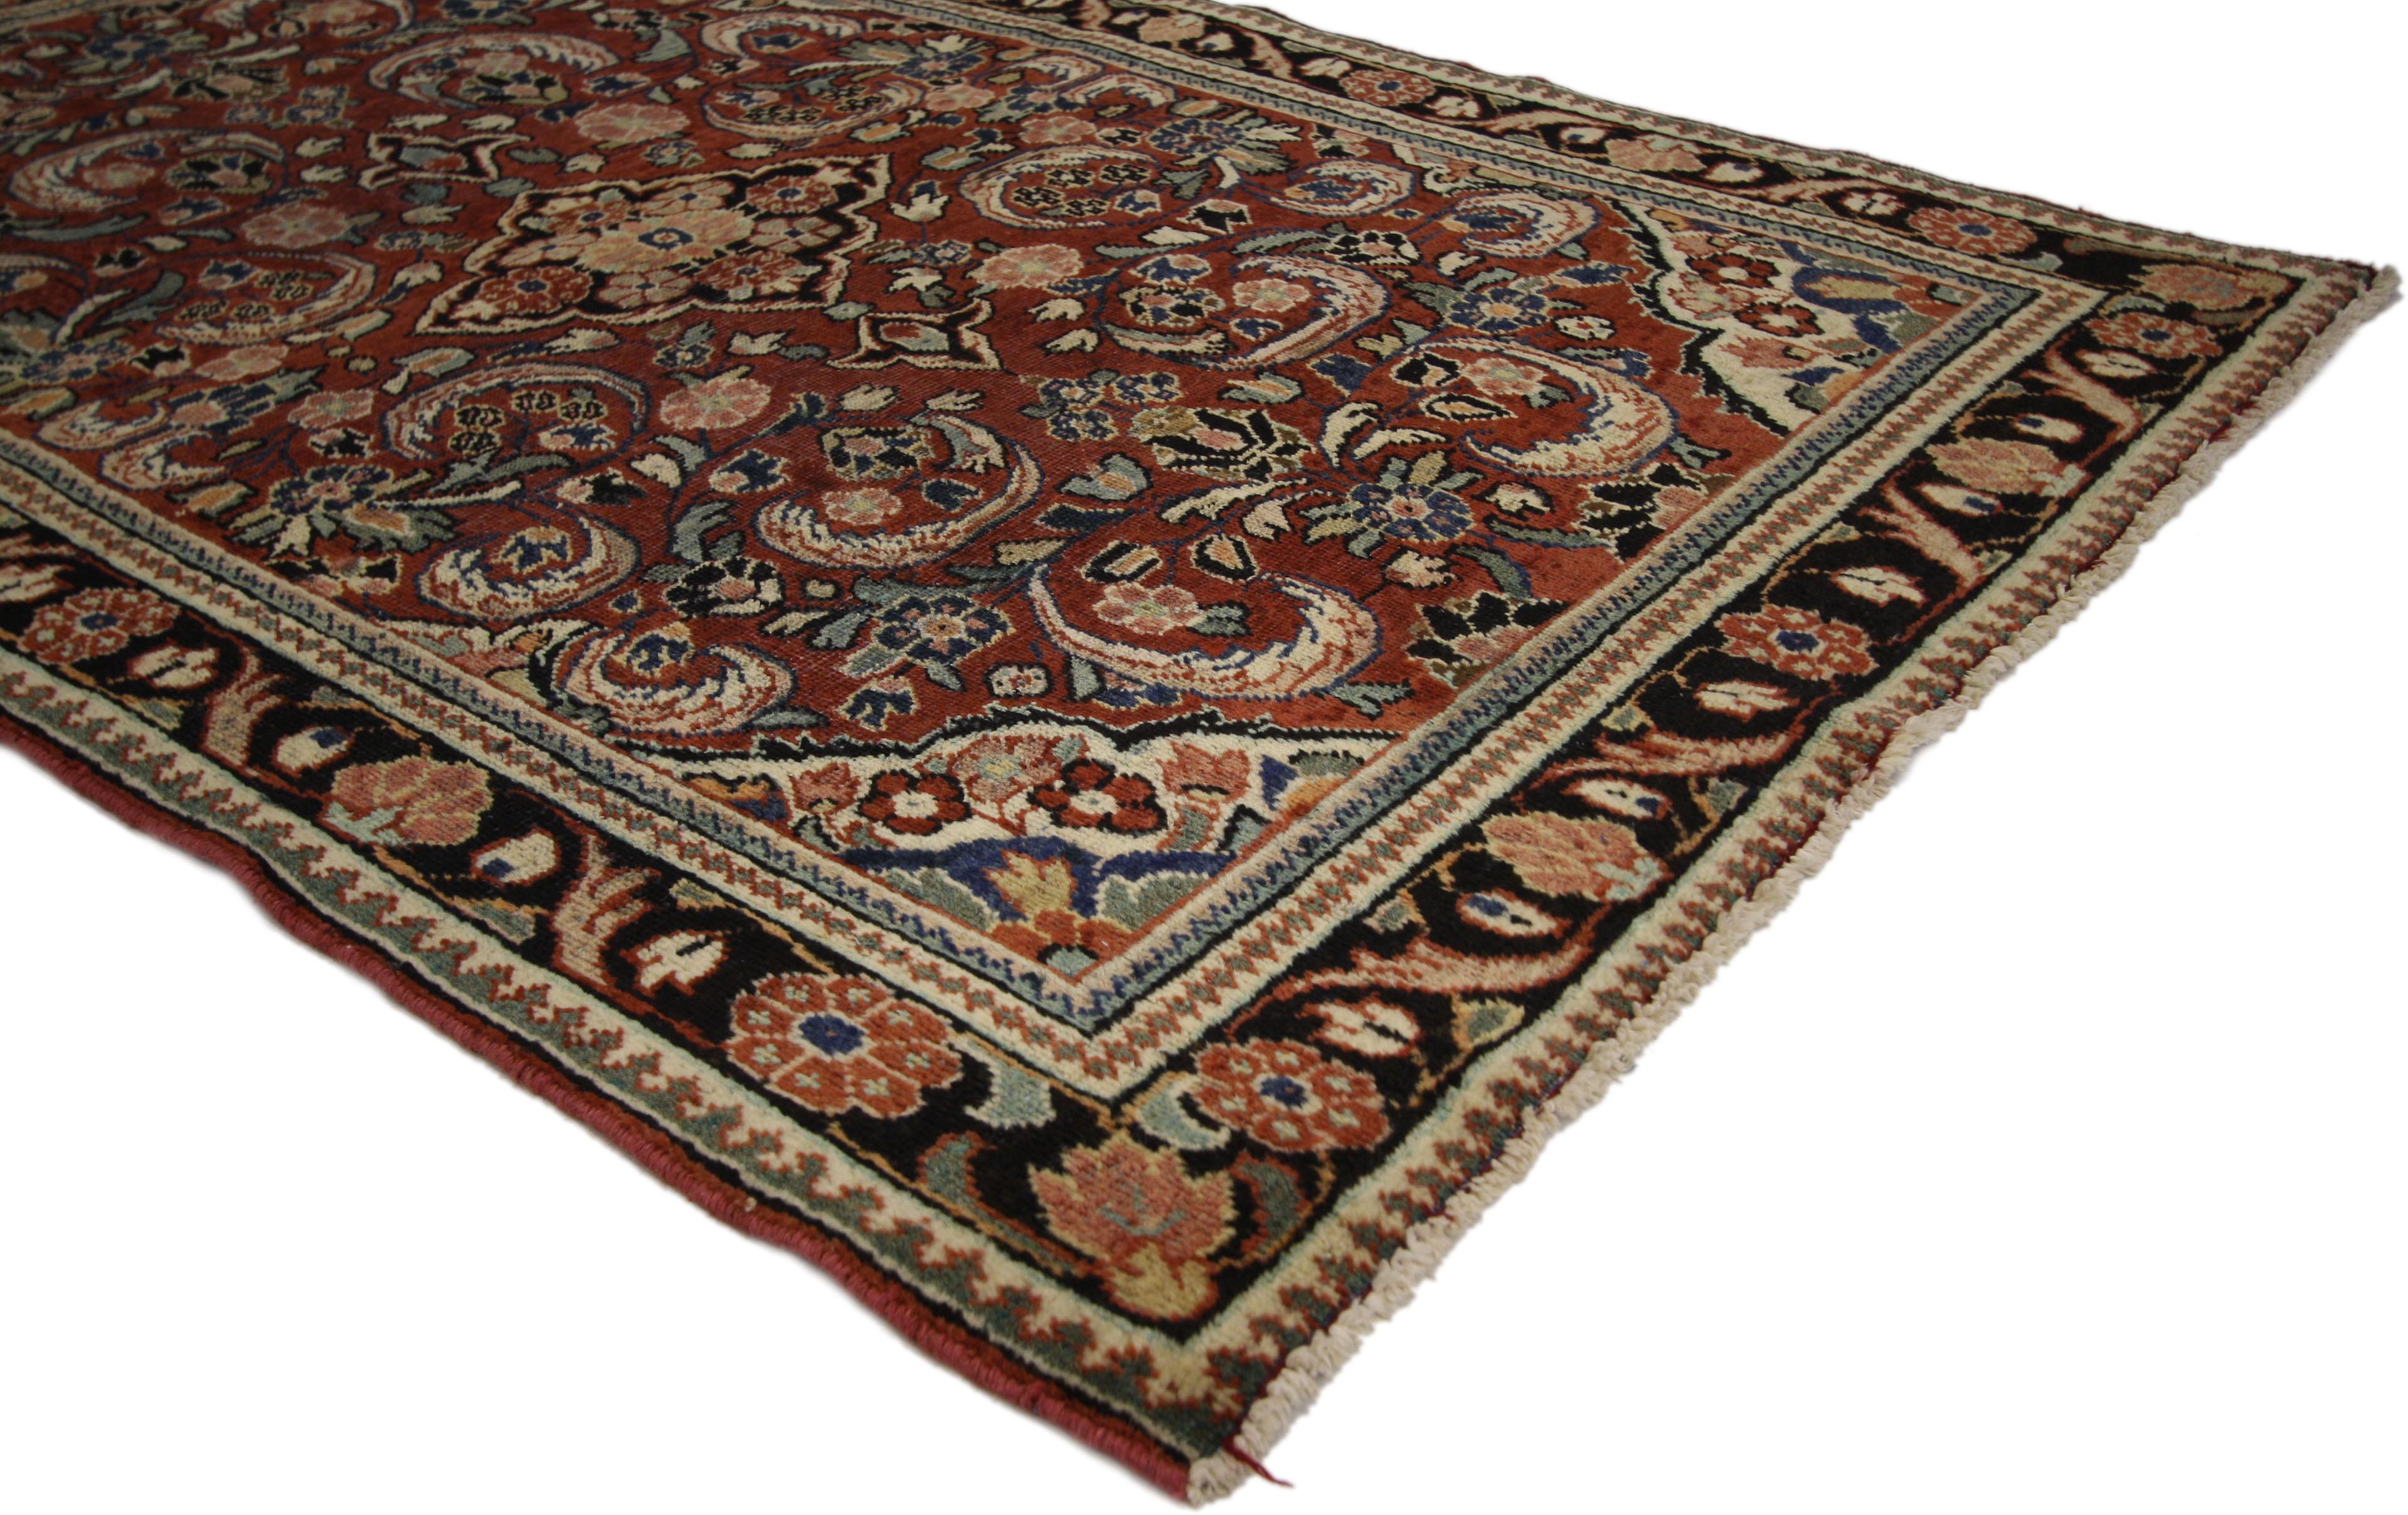 75187 Vintage Persian Mahal Teppich mit englischen traditionellen Stil 04'05 x 06'10. Dieser handgeknüpfte persische Mahal-Teppich aus Wolle im traditionellen Stil zeigt ein kleines Medaillon in der Mitte, das auf einem abgewetzten Feld schwebt,